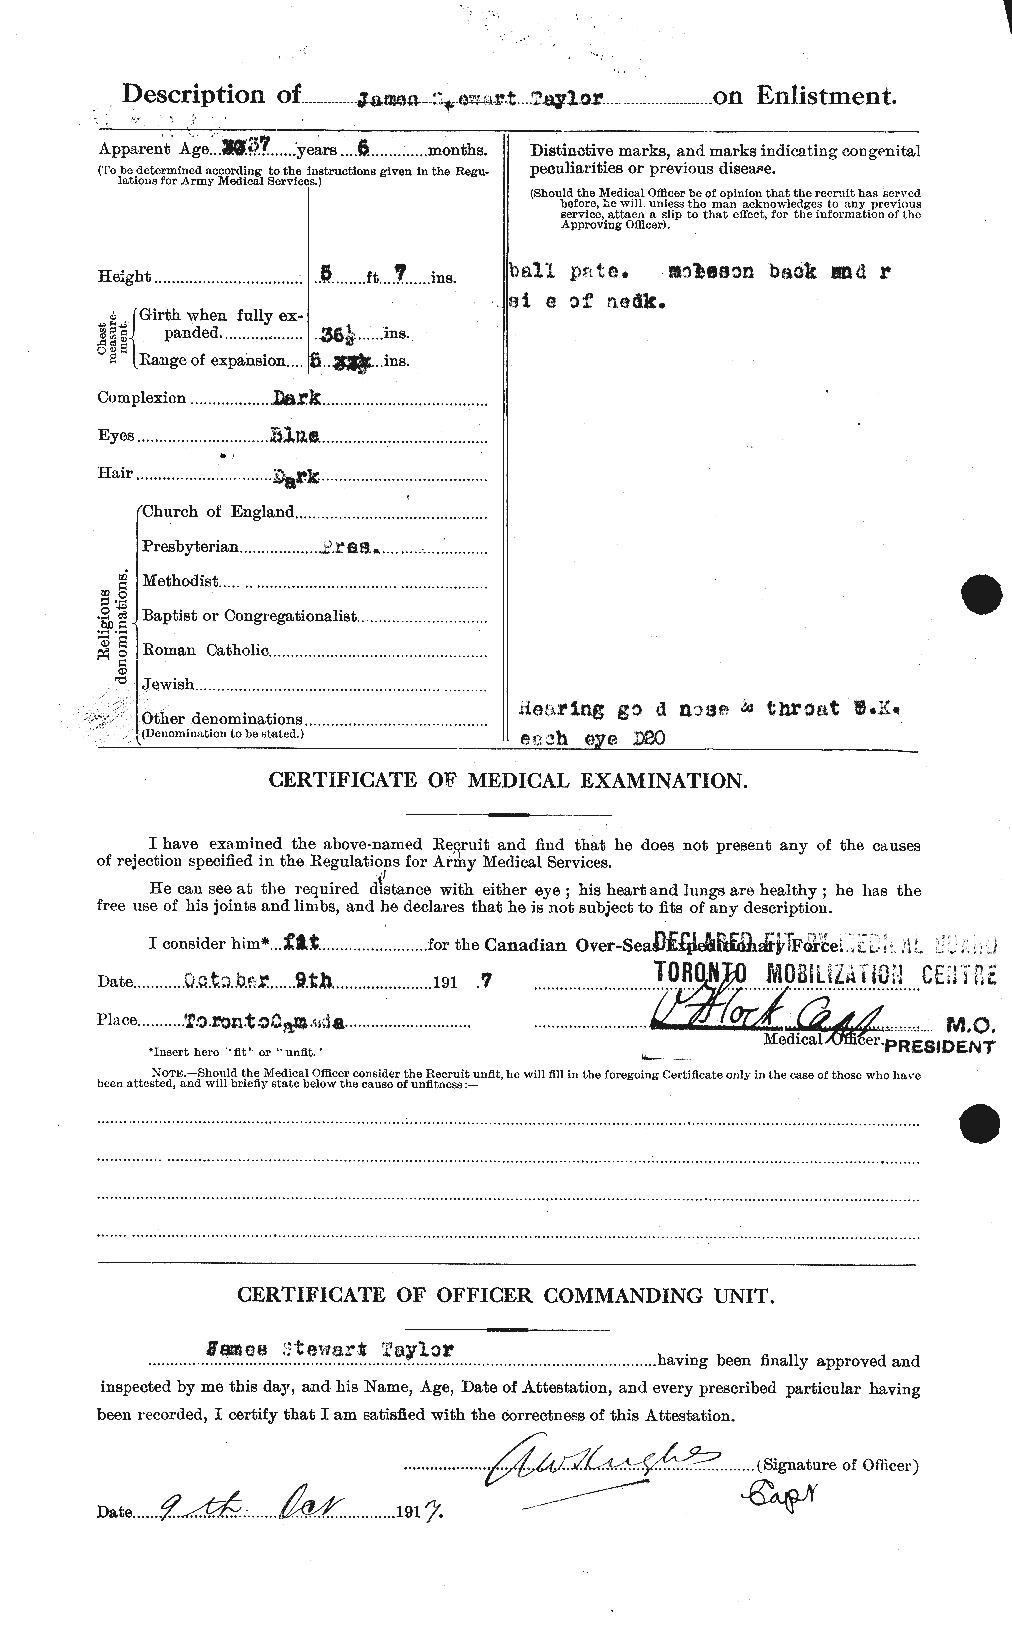 Dossiers du Personnel de la Première Guerre mondiale - CEC 626956b